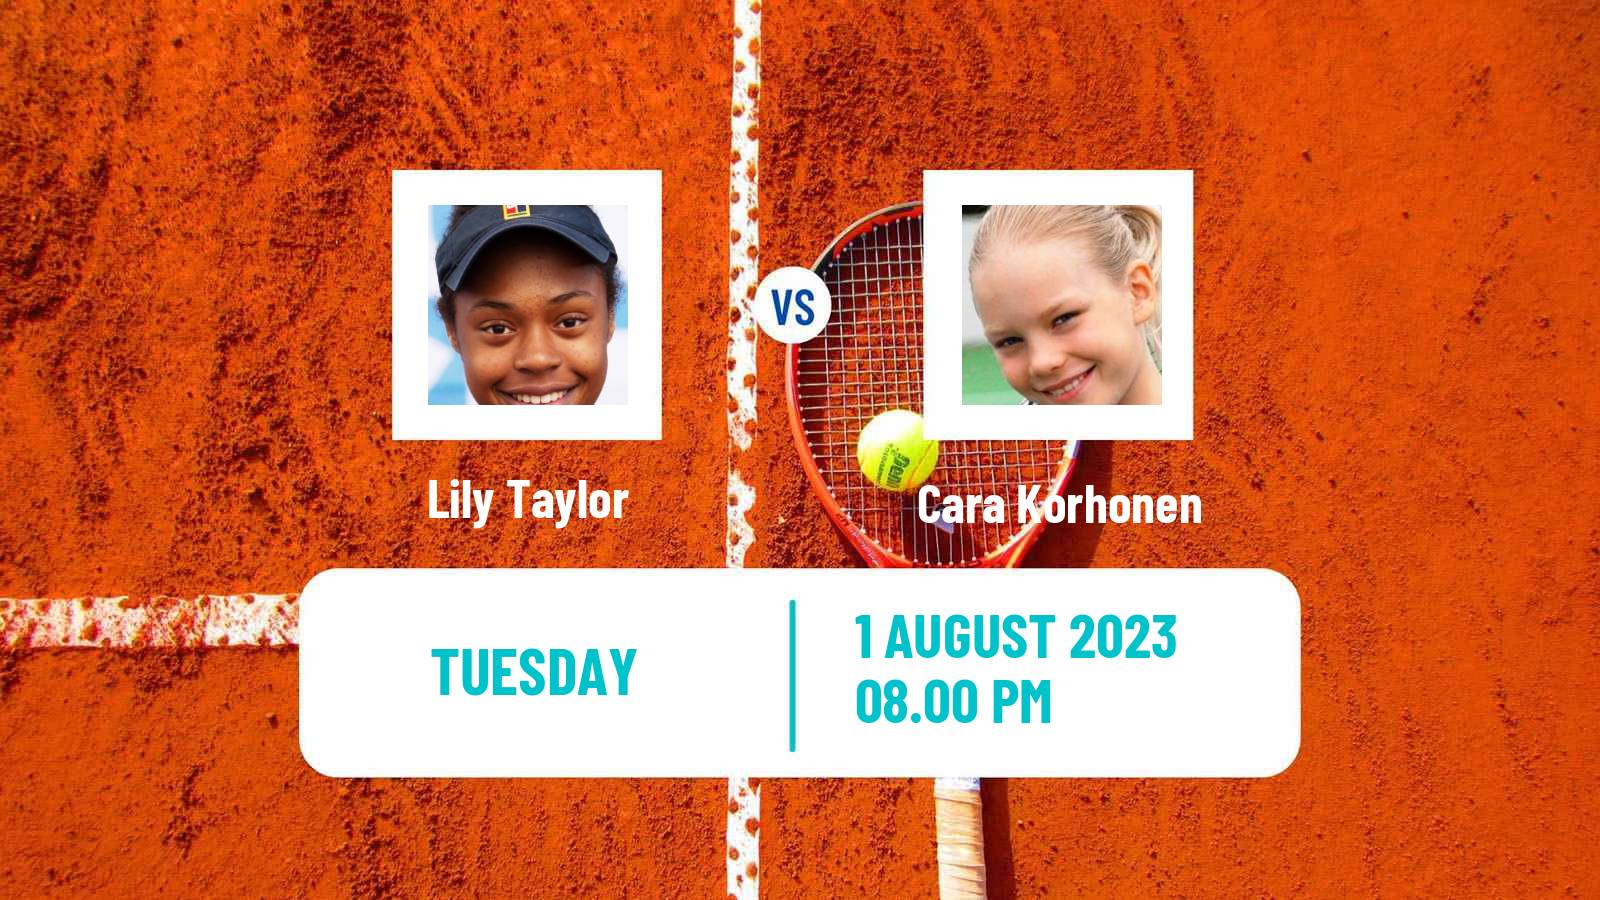 Tennis ITF W15 Caloundra 2 Women Lily Taylor - Cara Korhonen